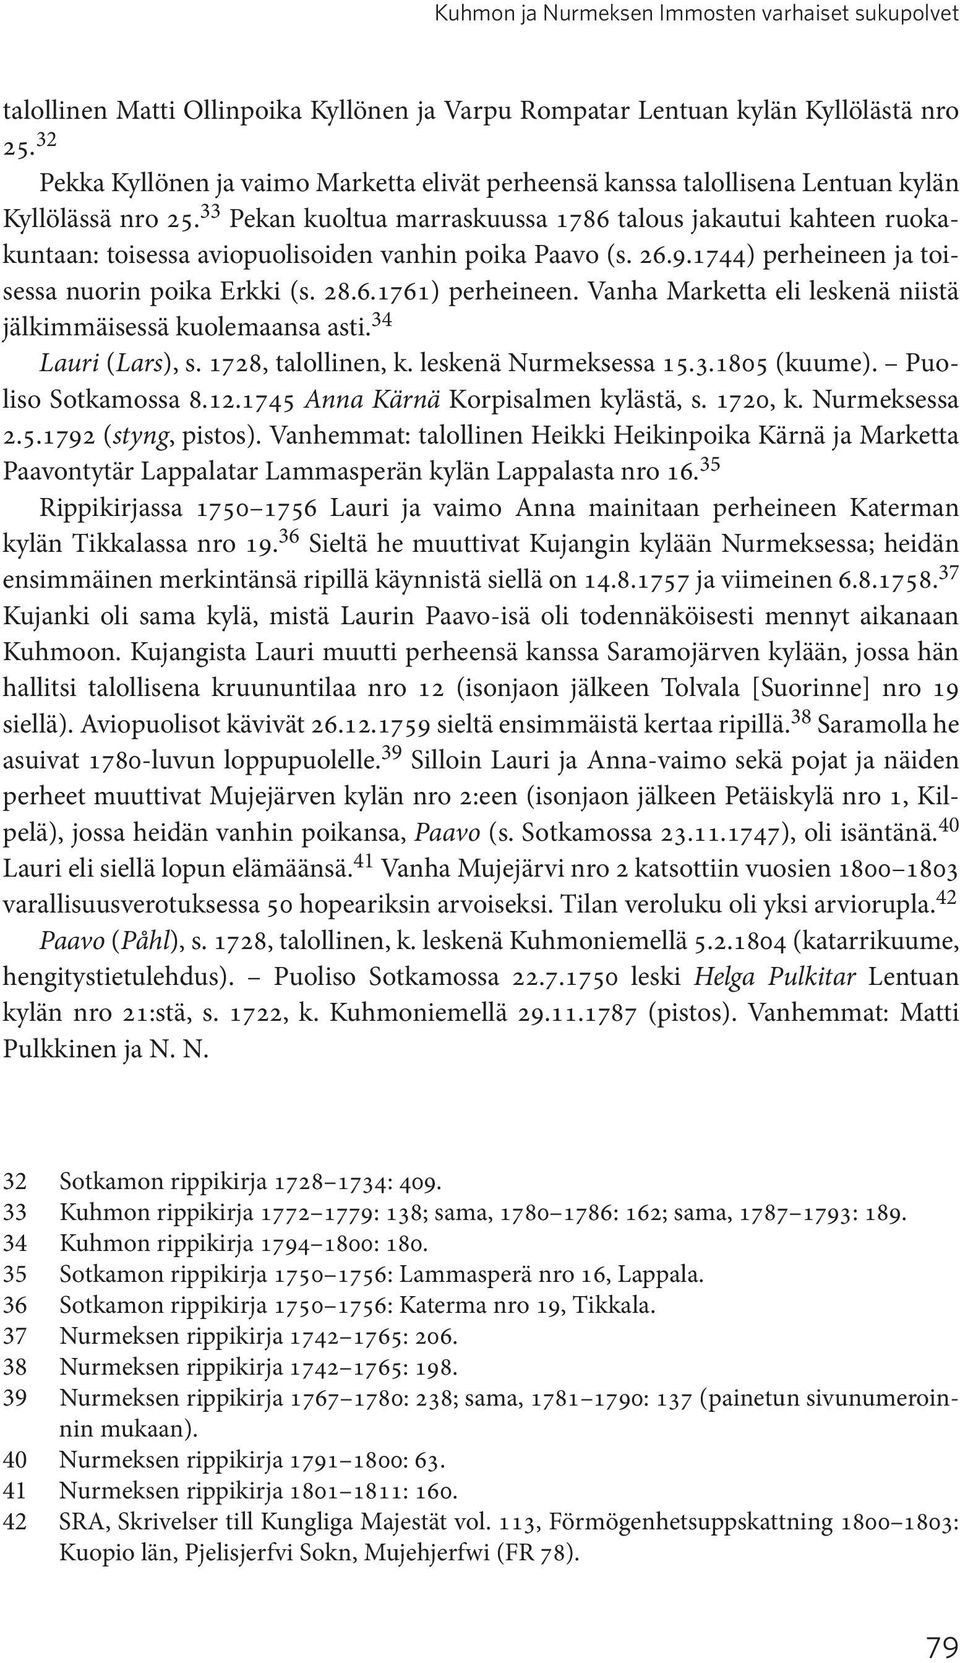 33 Pekan kuoltua marraskuussa 1786 talous jakautui kahteen ruokakuntaan: toisessa aviopuolisoiden vanhin poika Paavo (s. 26.9.1744) perheineen ja toisessa nuorin poika Erkki (s. 28.6.1761) perheineen.